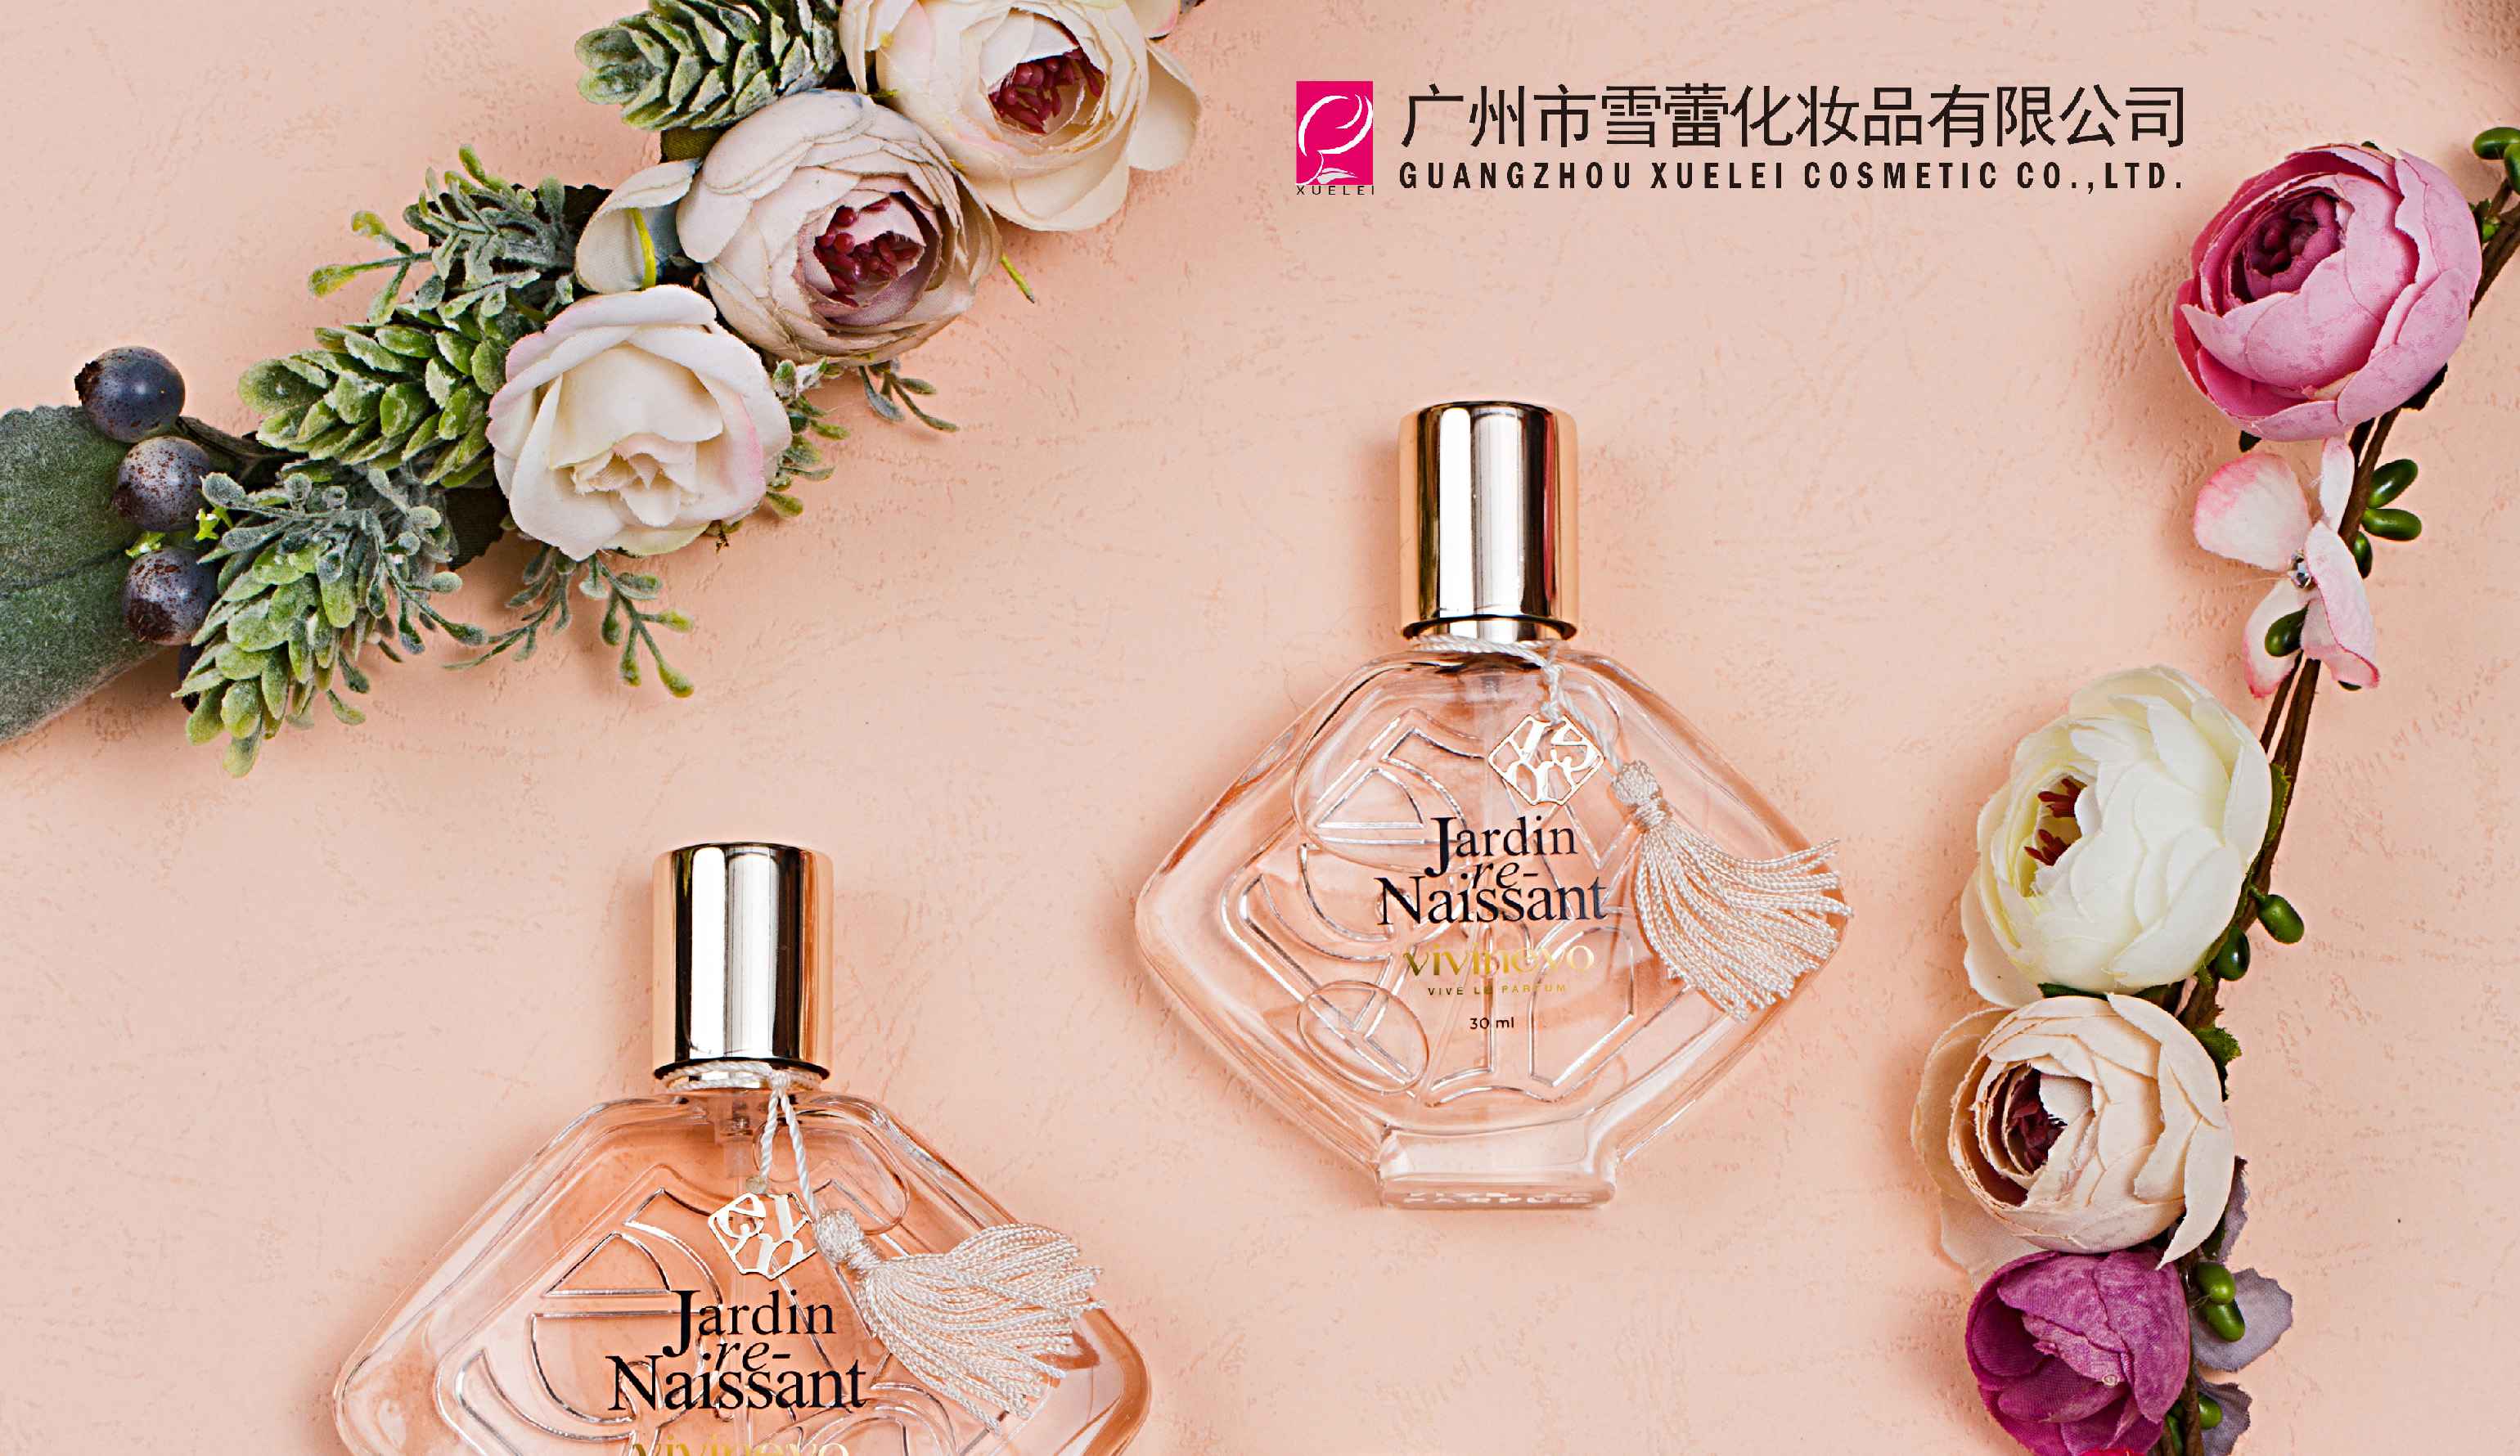 广州市雪蕾化妆品有限公司是国内香水行业龙头企业，香水香氛全方案解决专家